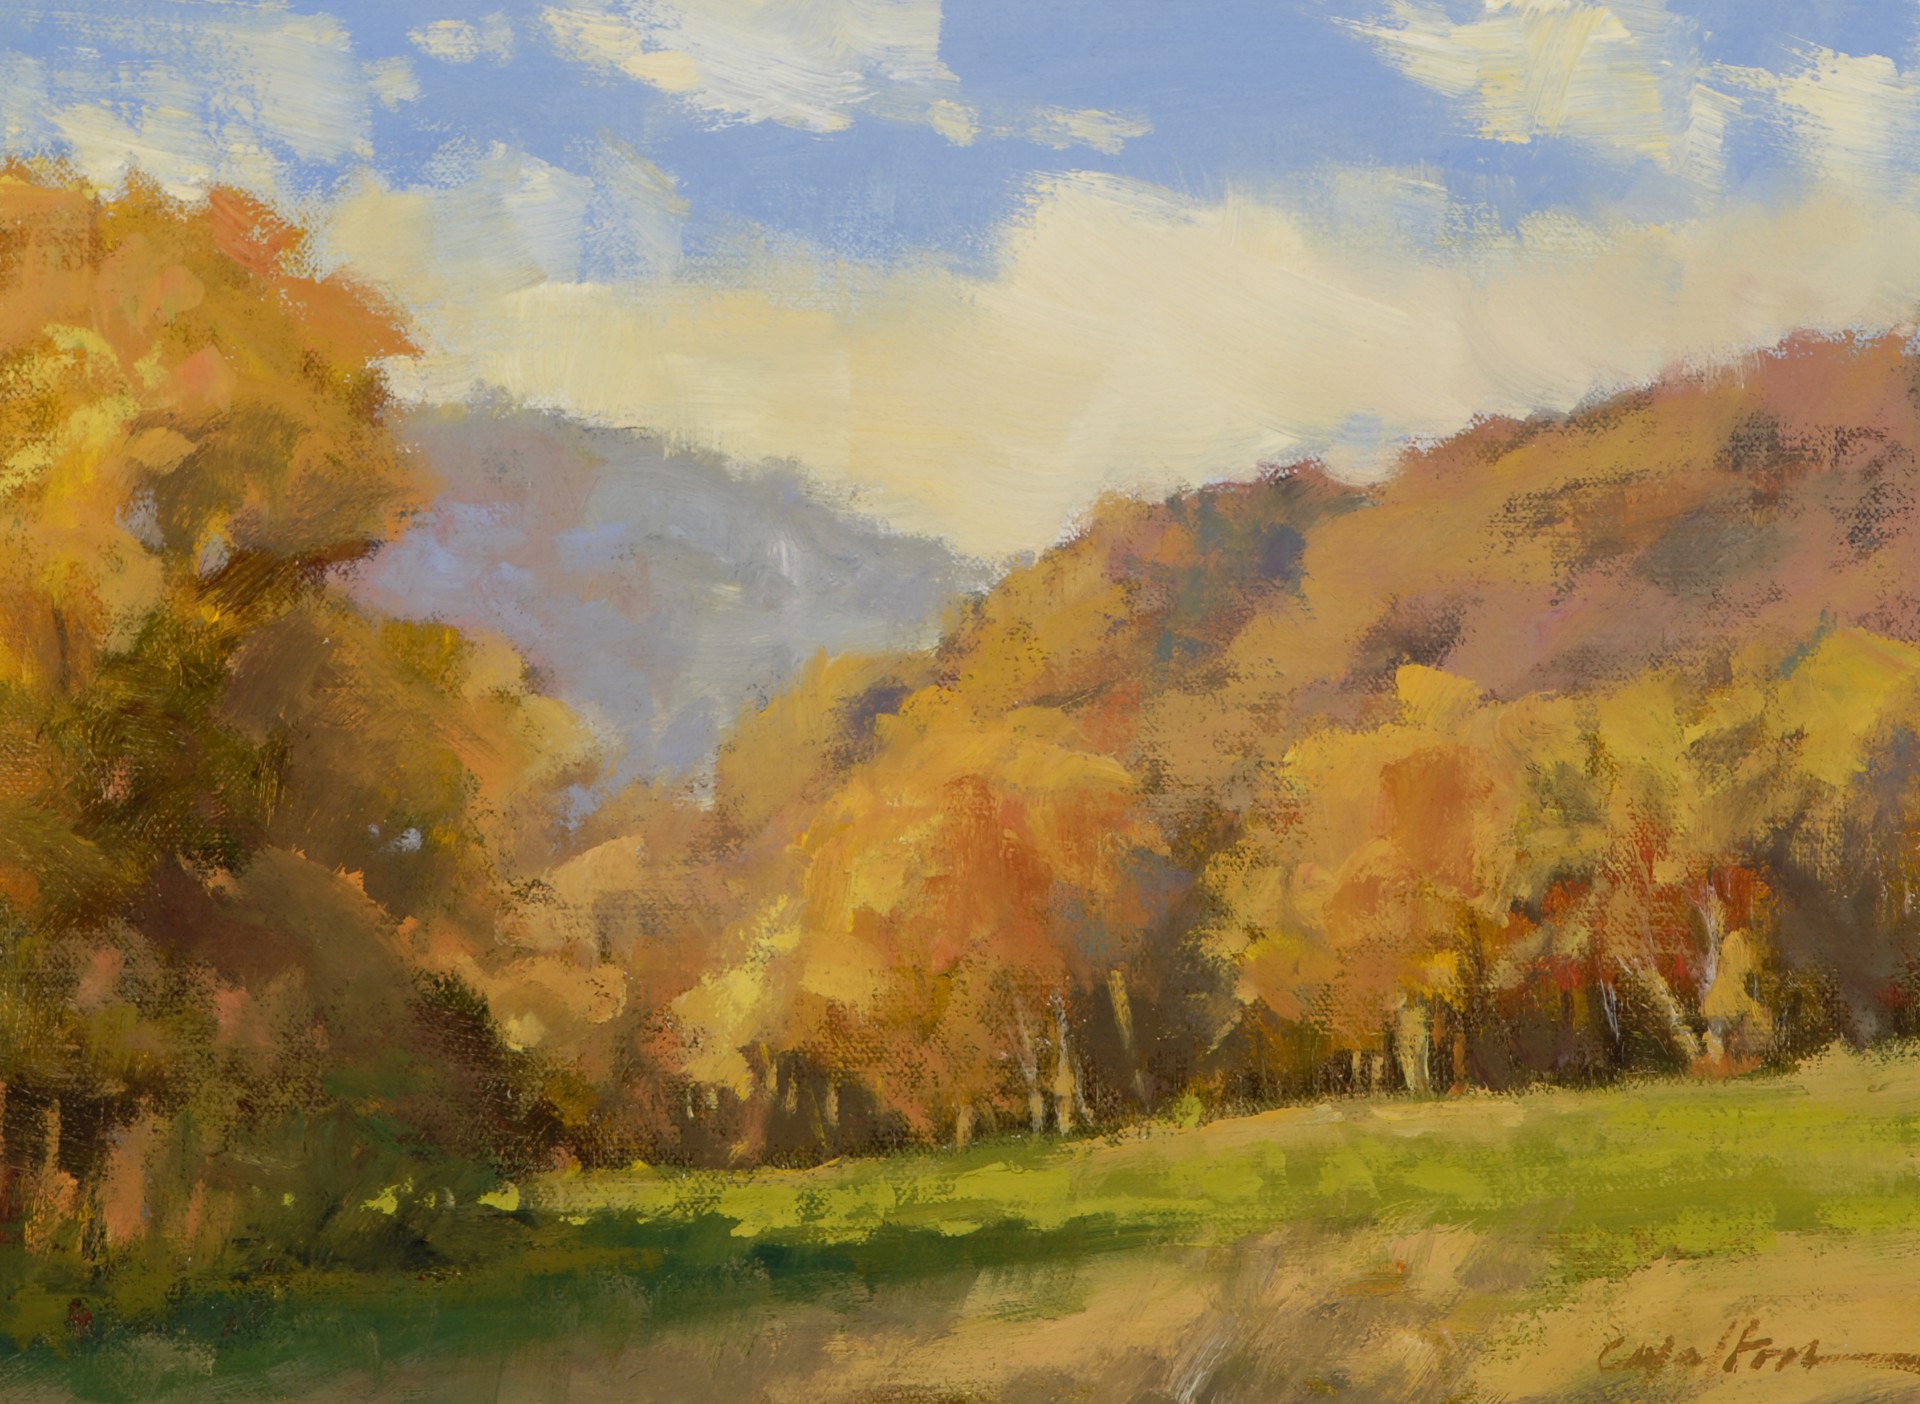 Sunlit Trapp Meadow by Carolyn Walton